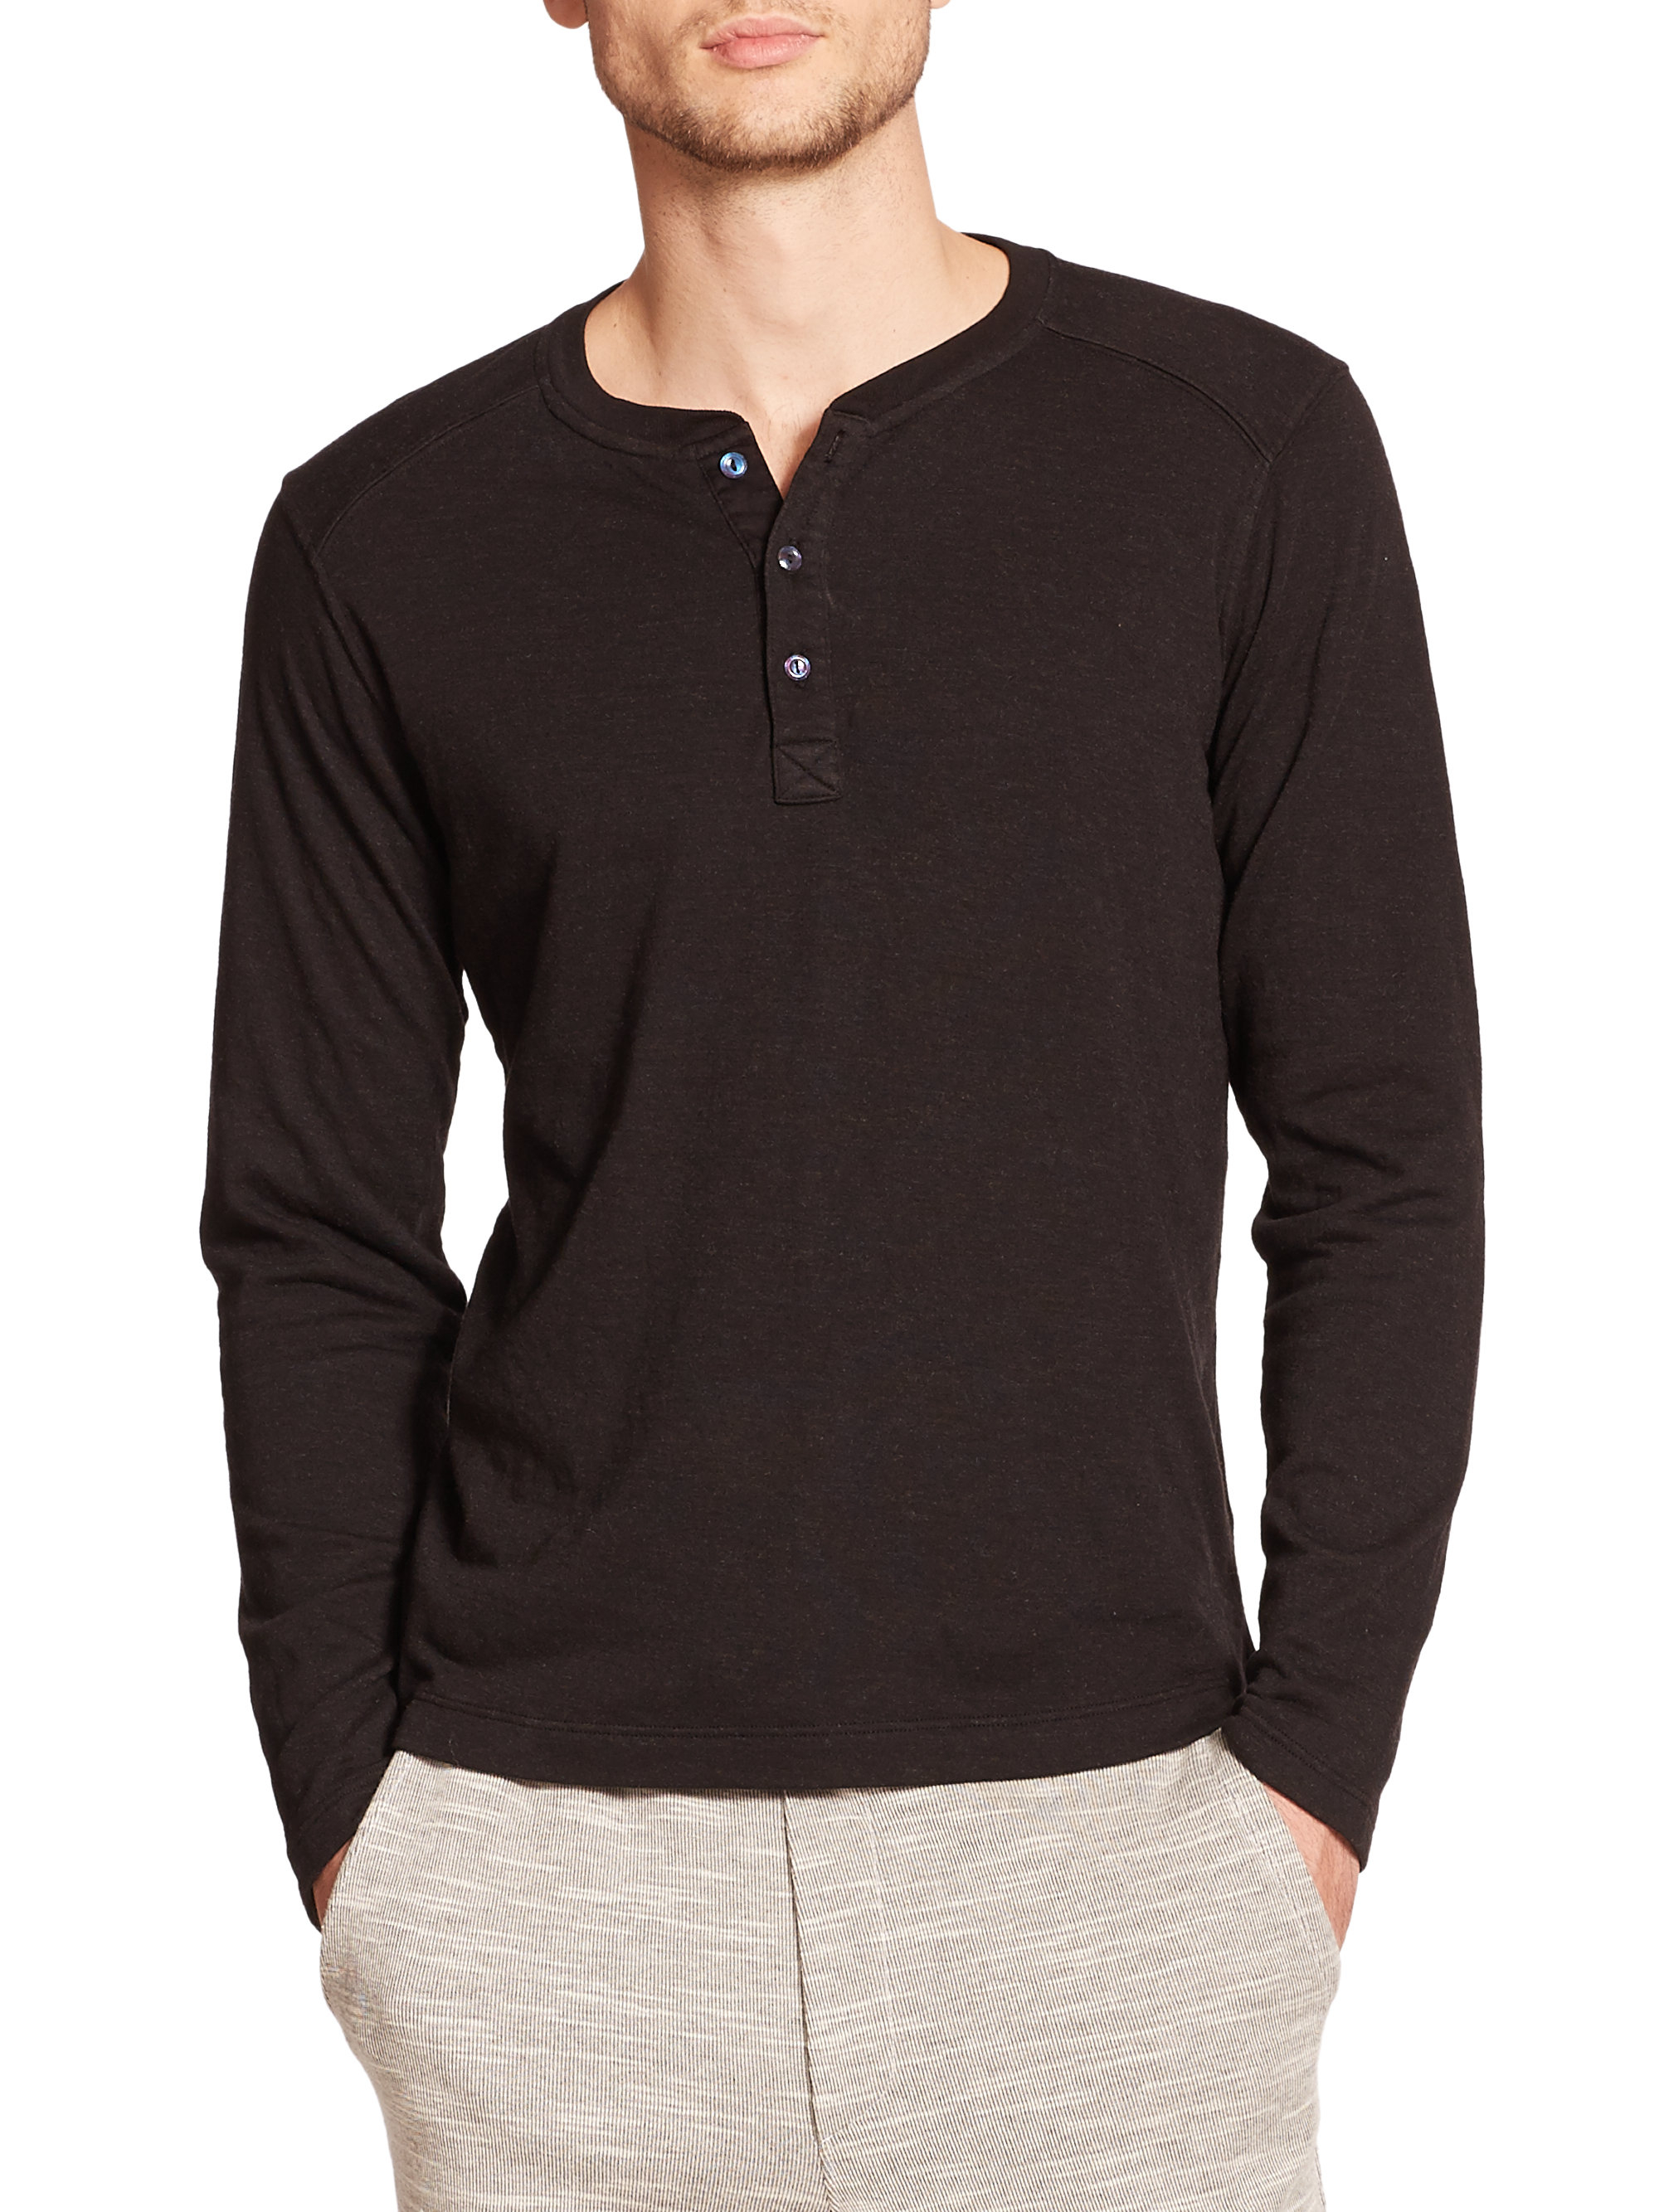 Lyst - Splendid Mills Long-sleeved Henley T-shirt in Black for Men